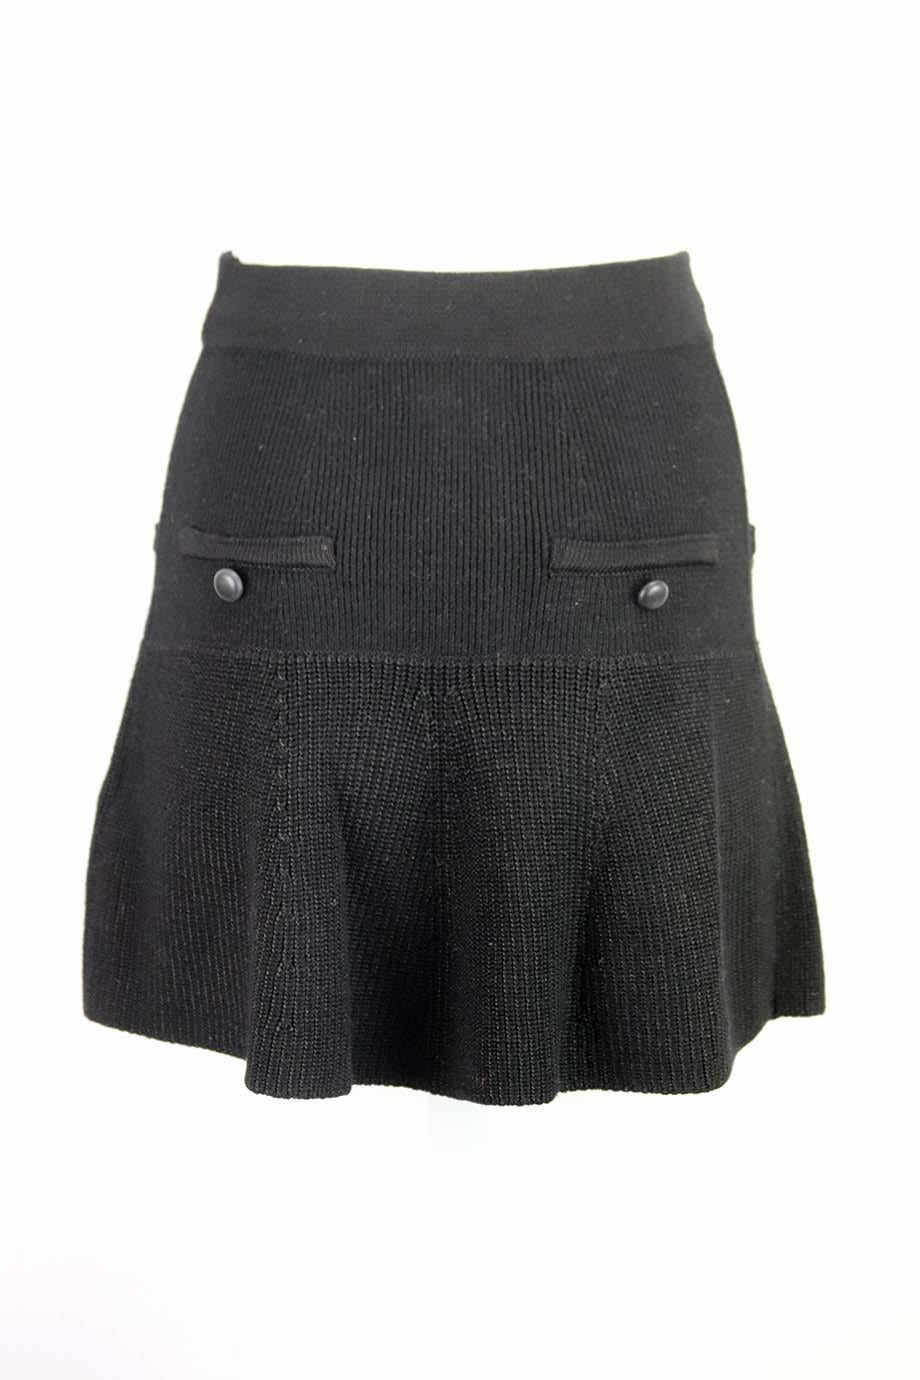 Black Isabel Marant Huxley Knitted Wool Blend Skirt FR 36 UK 8 